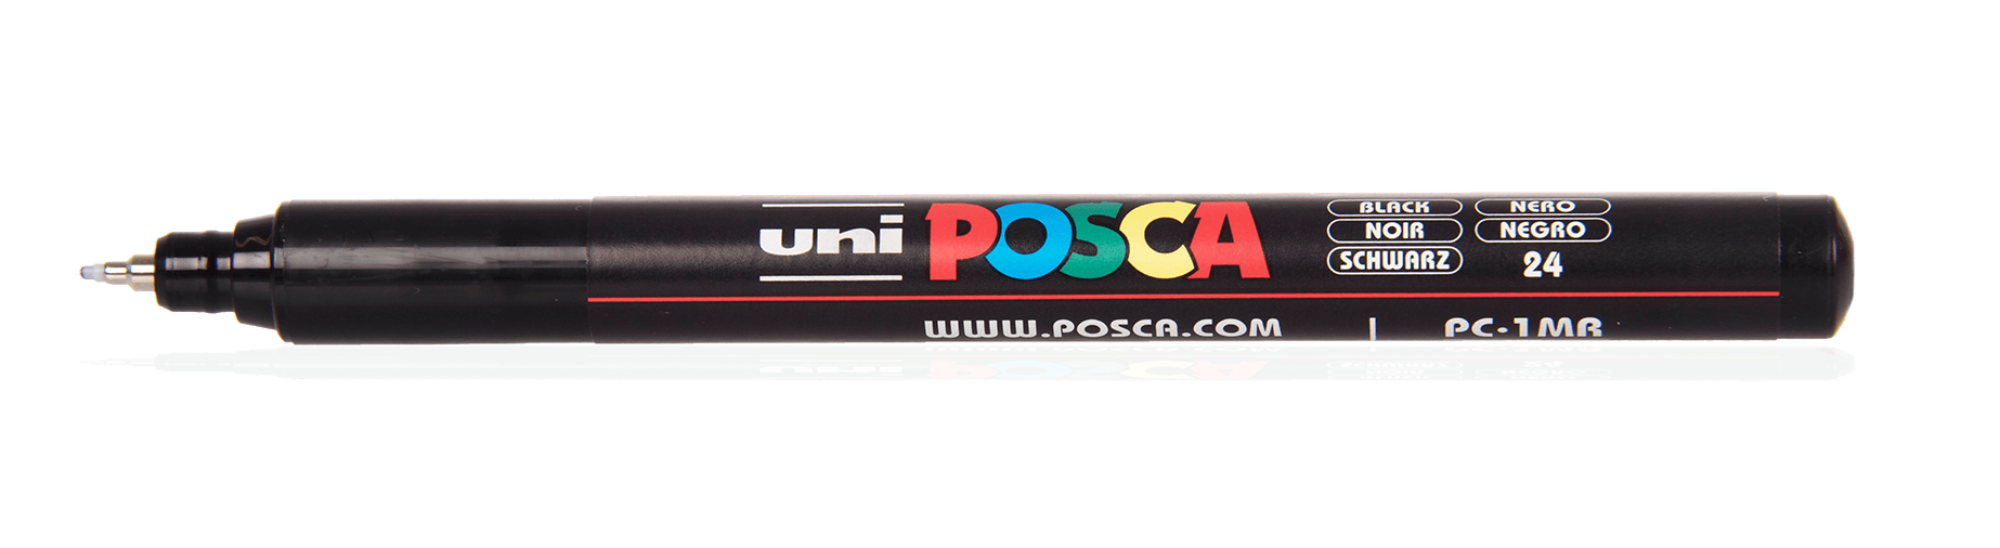 posca-pc-5m-1-2000x0-c-default.png